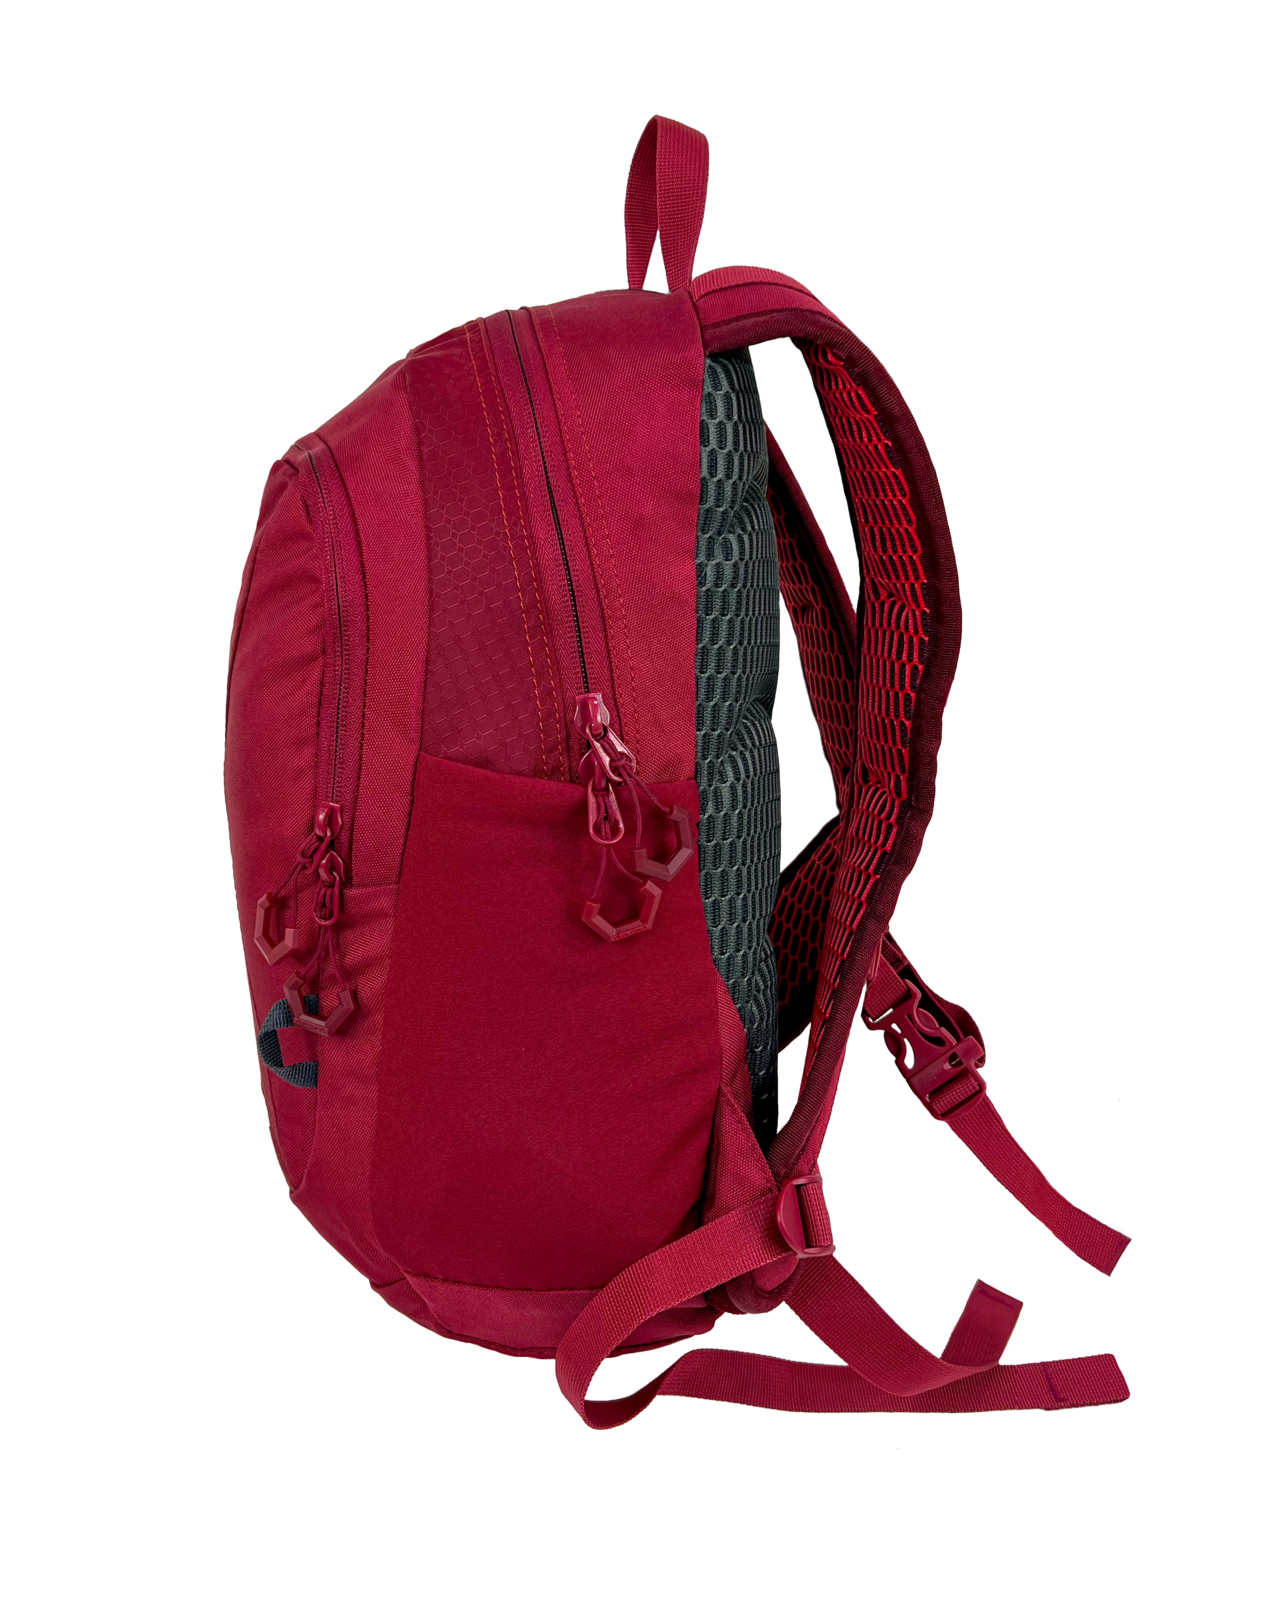 Yanga Backpack